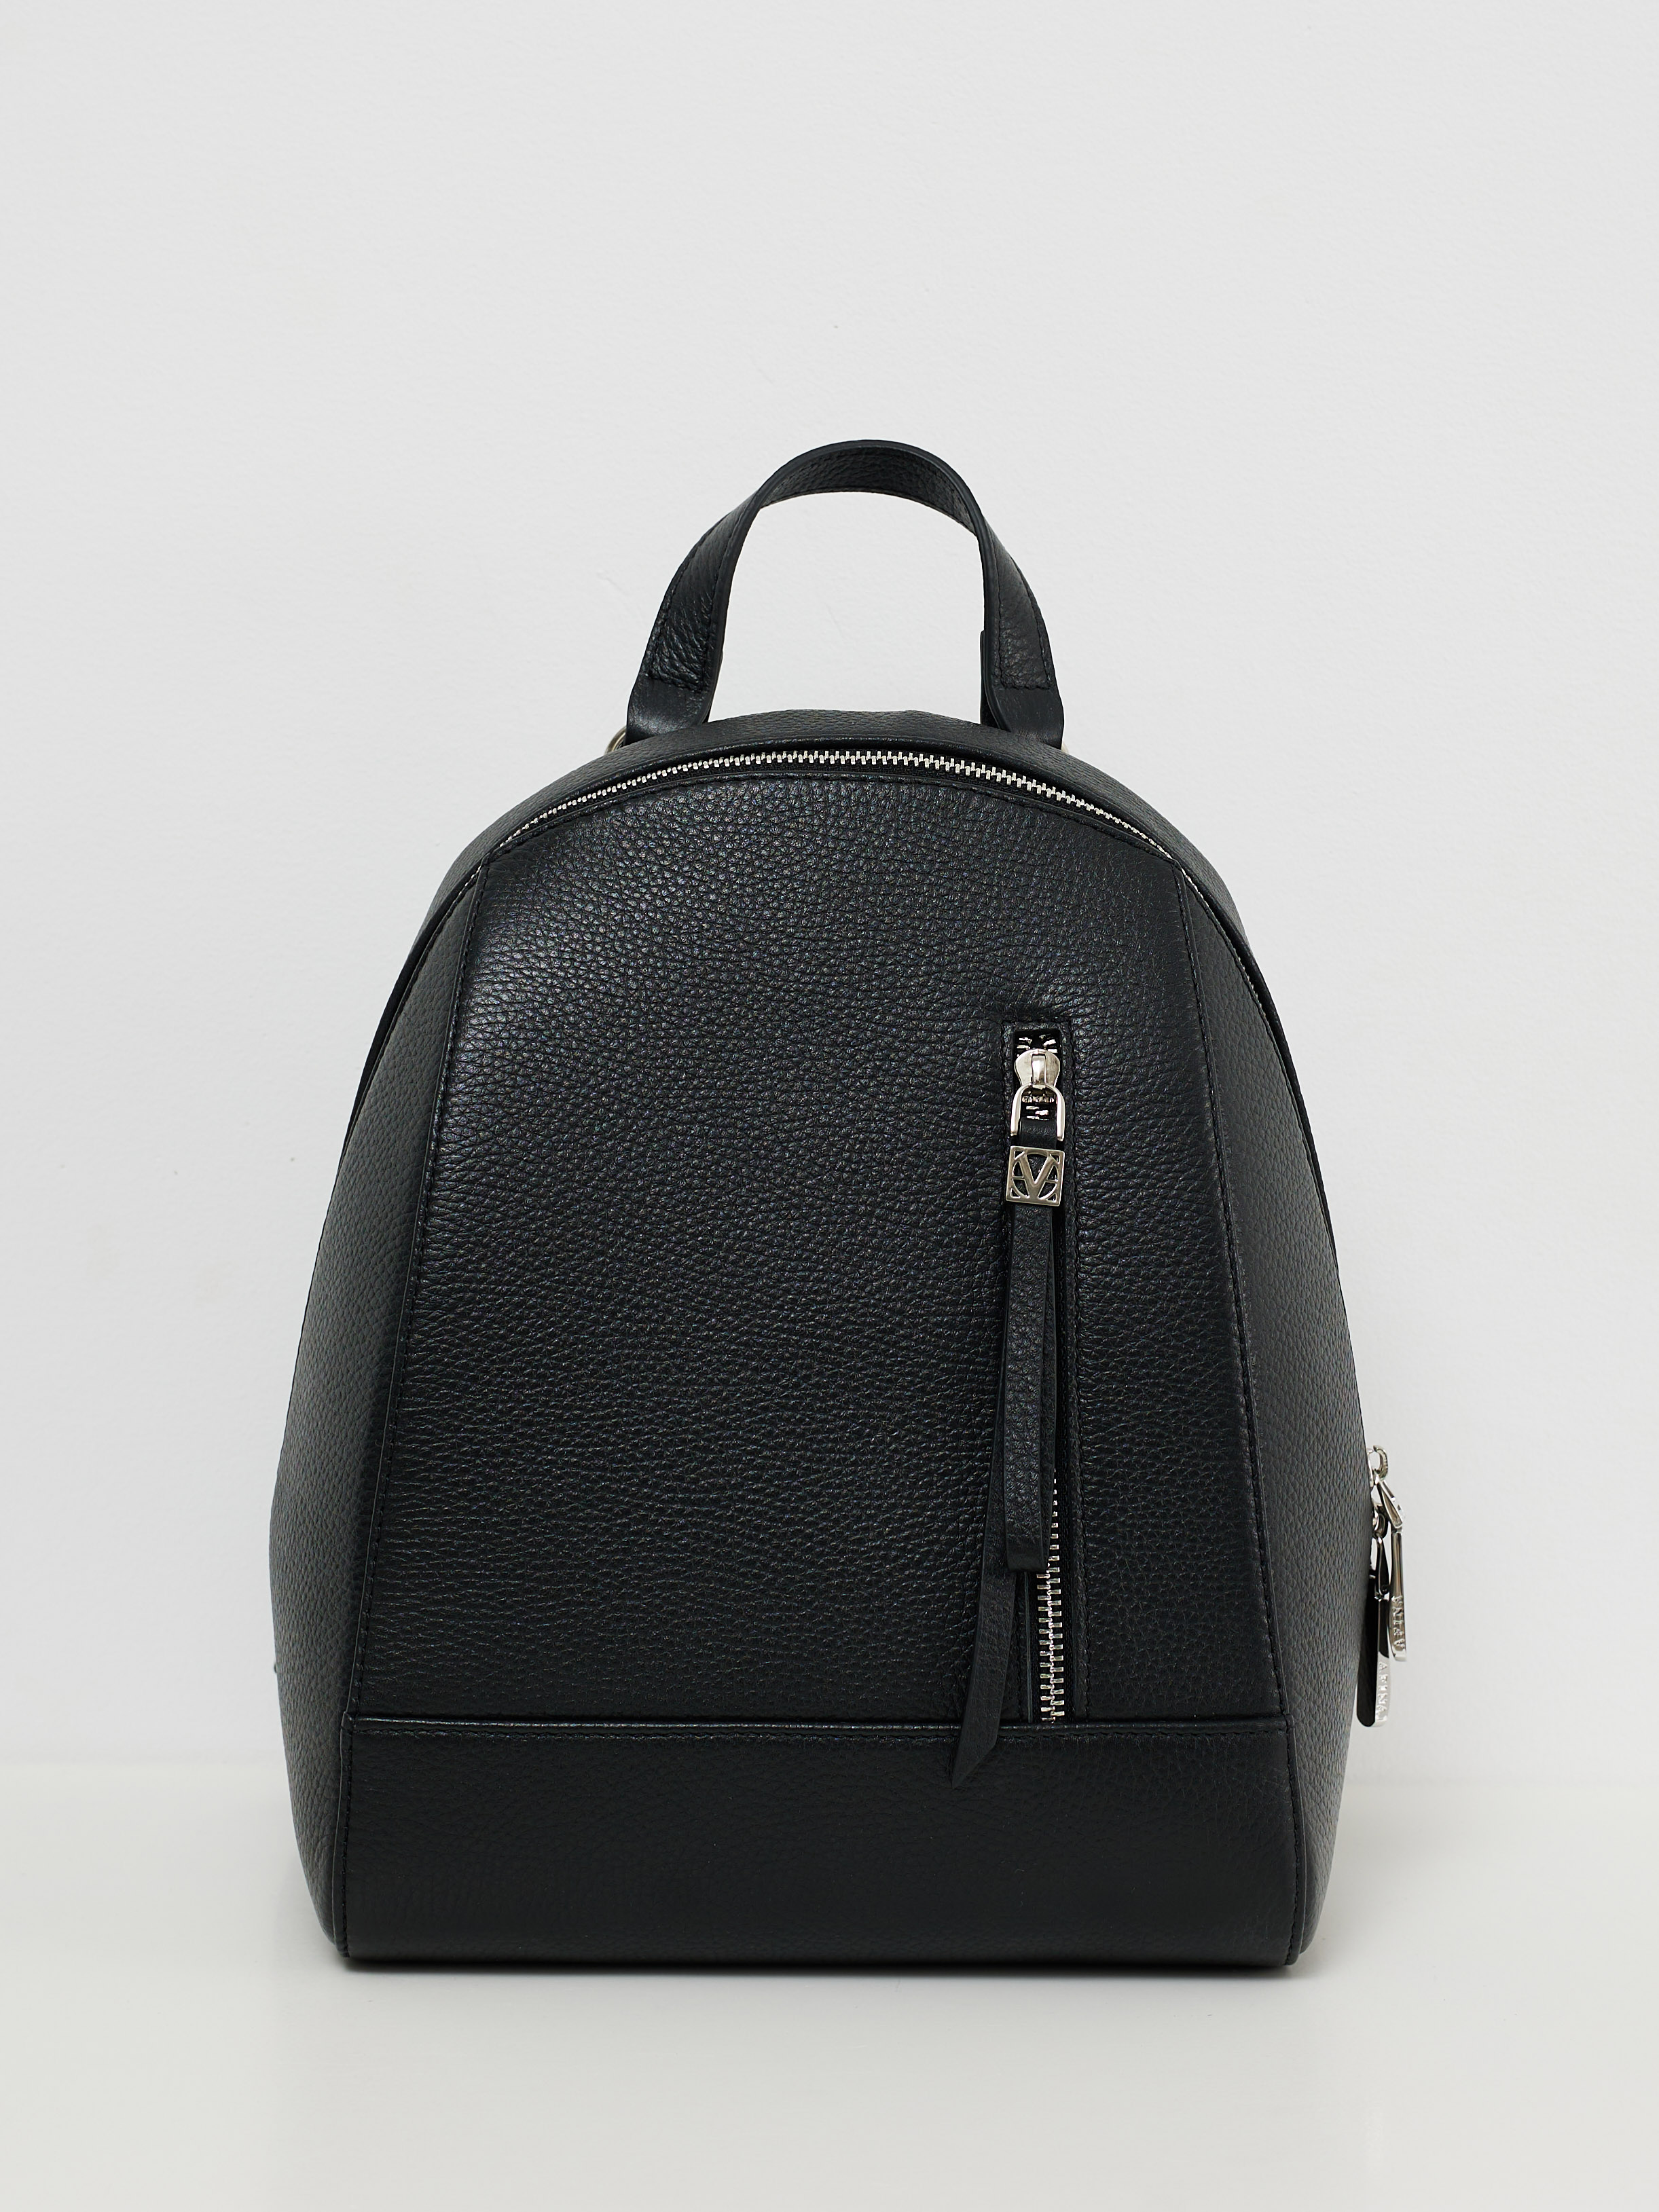 Рюкзак женский Afina 689 черный, 30х23,5х12 см